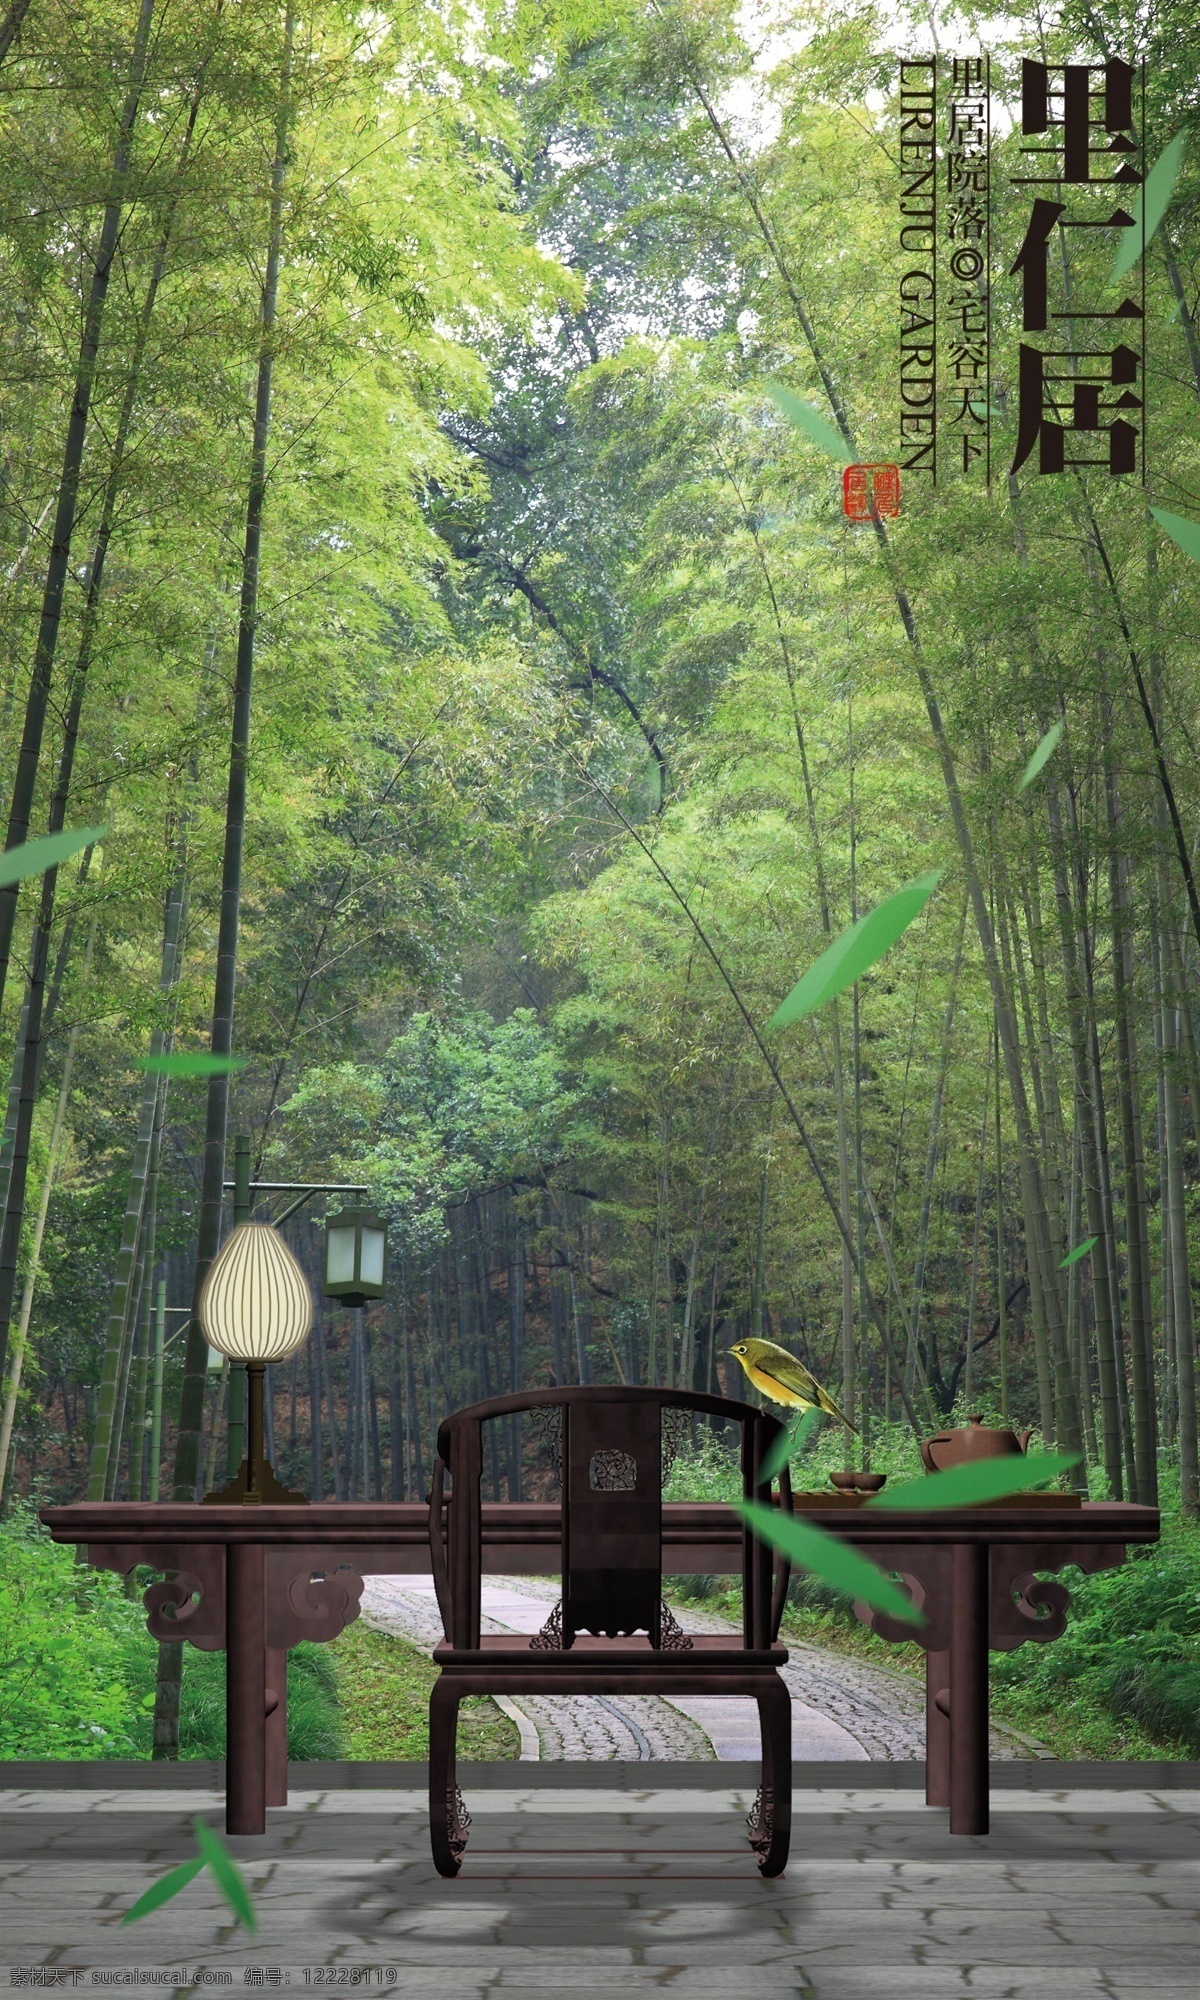 里仁 居 传统文化 灯 鸟 文化艺术 中国风 竹子 桌椅 自然生活 里仁居 模板 psd源文件